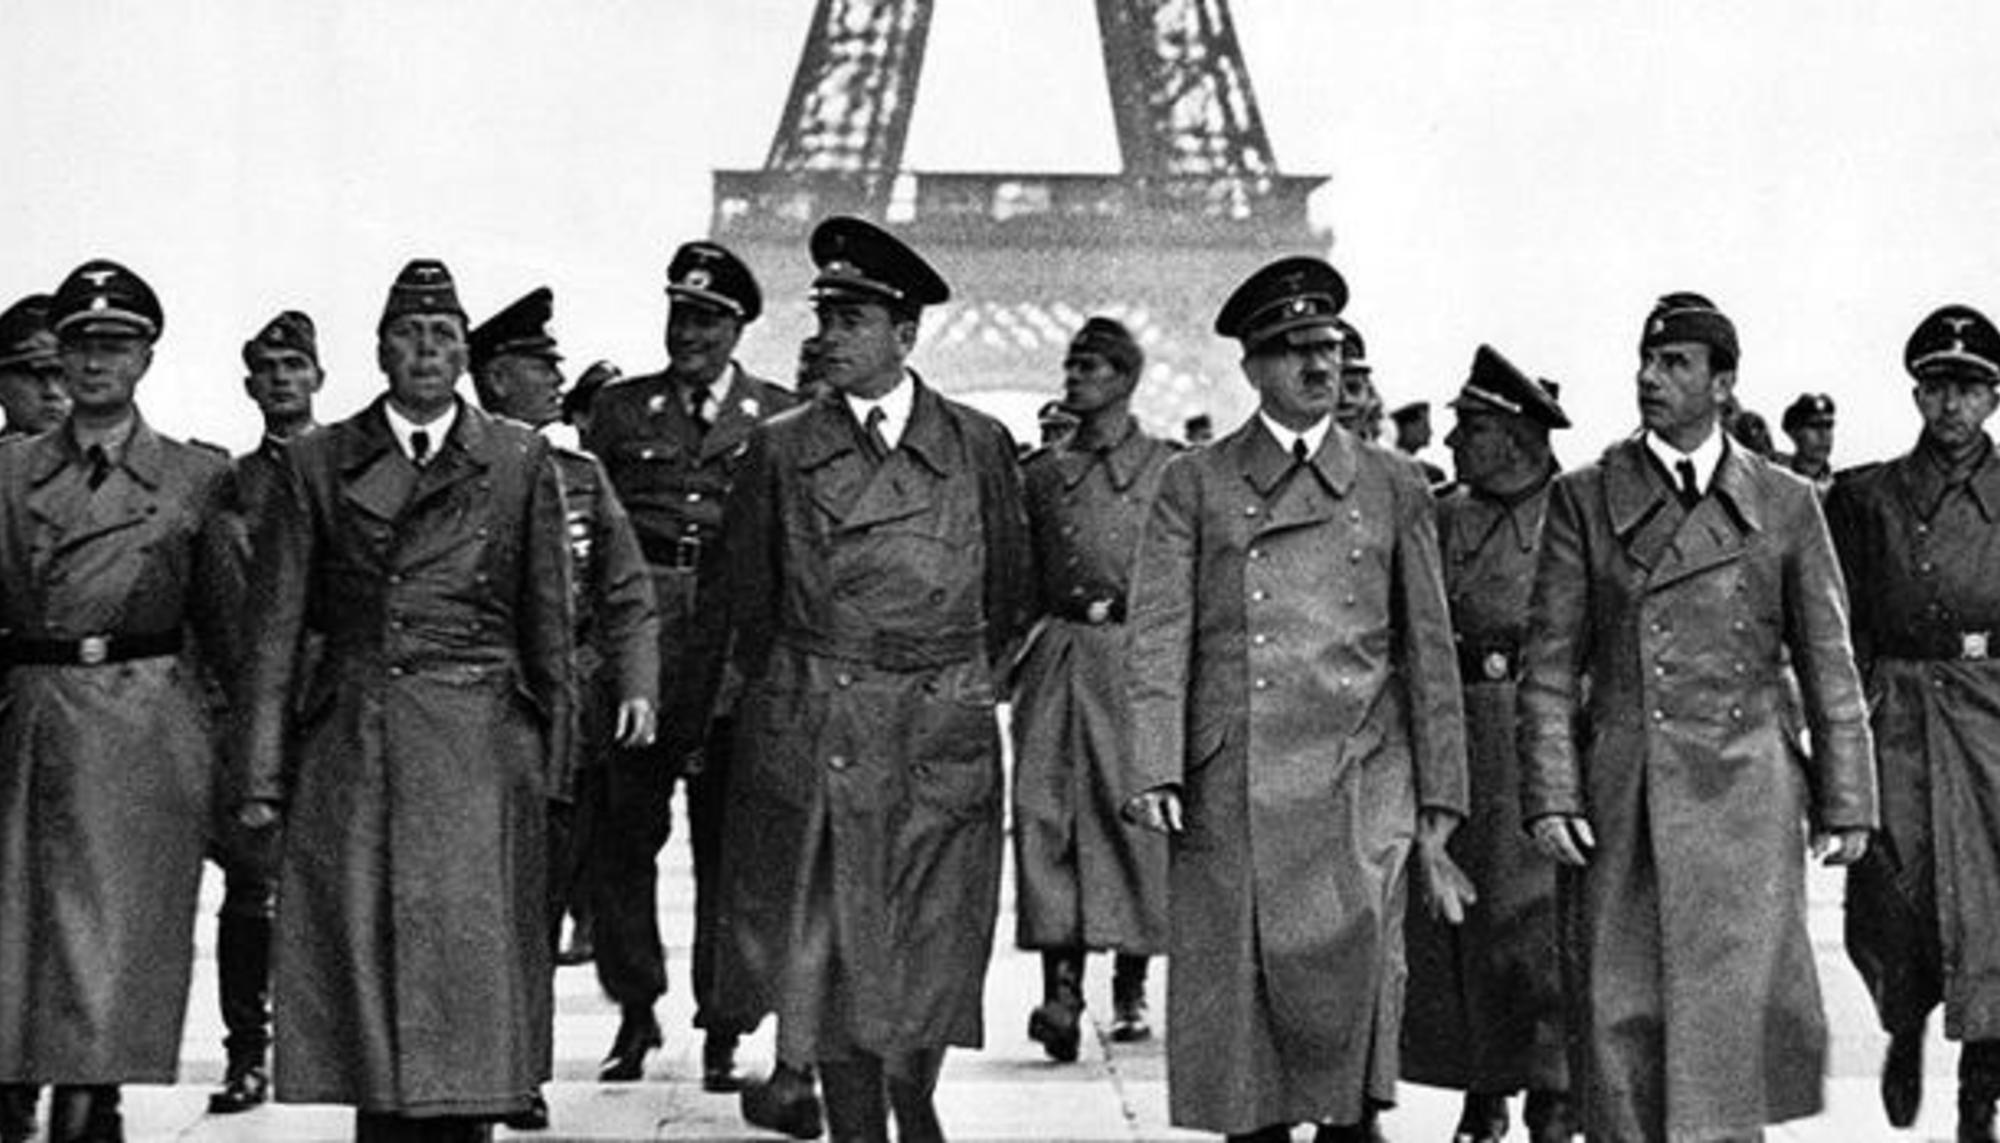 Hitler en París